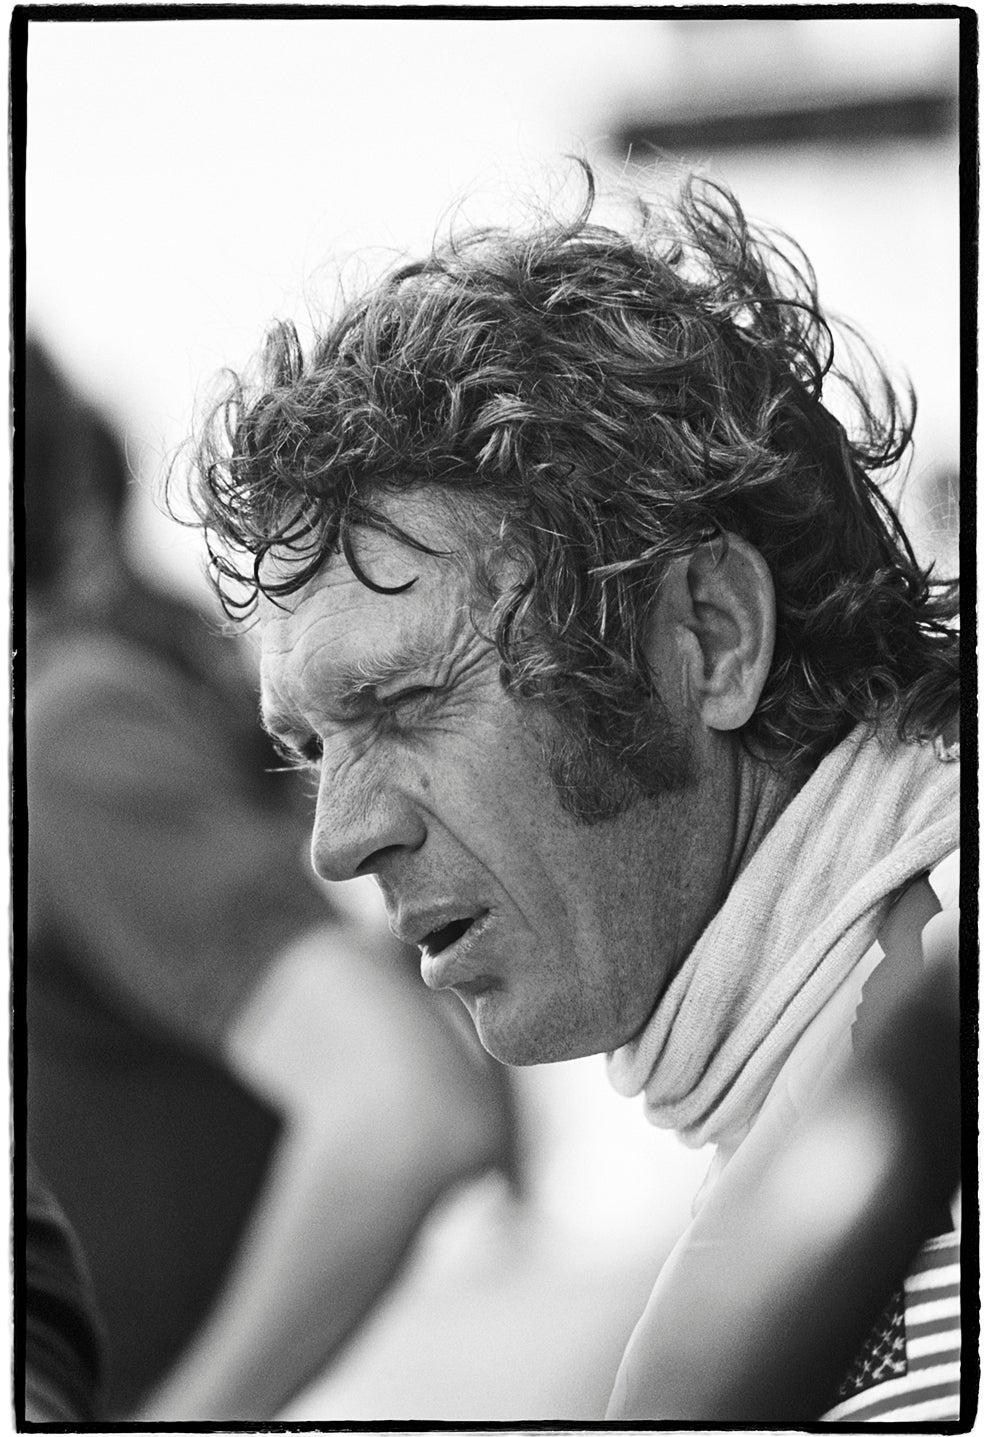 Steve McQueen / Sebring 12-Hour Race, Florida